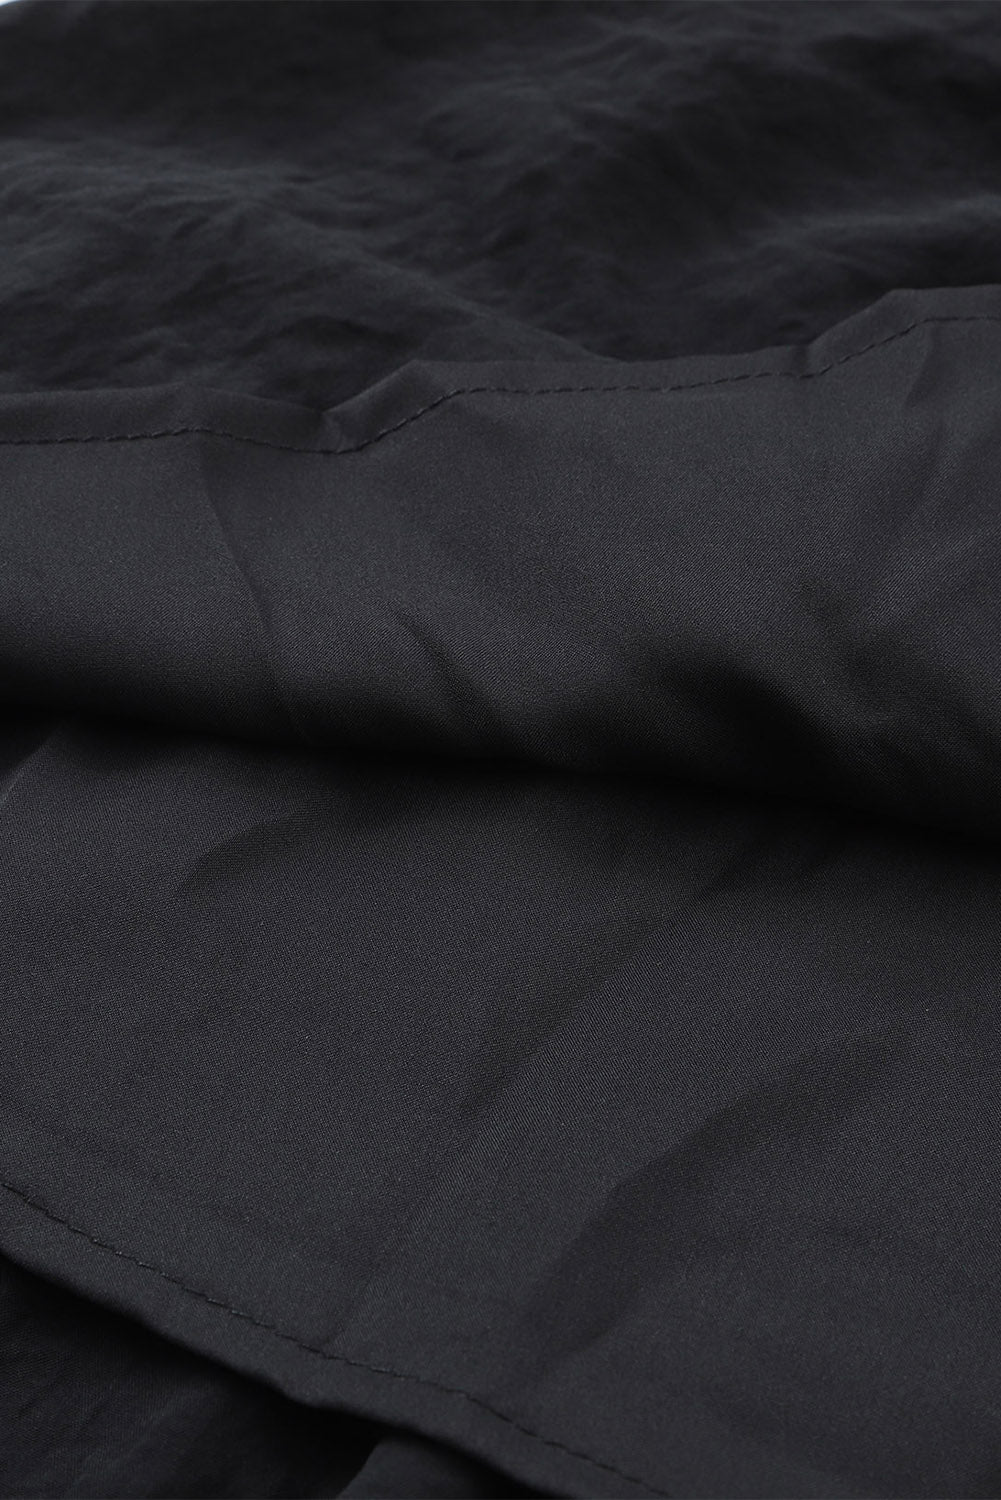 Schwarzes, plissiertes, gestuftes Minikleid mit Rüschen und Flatterärmeln